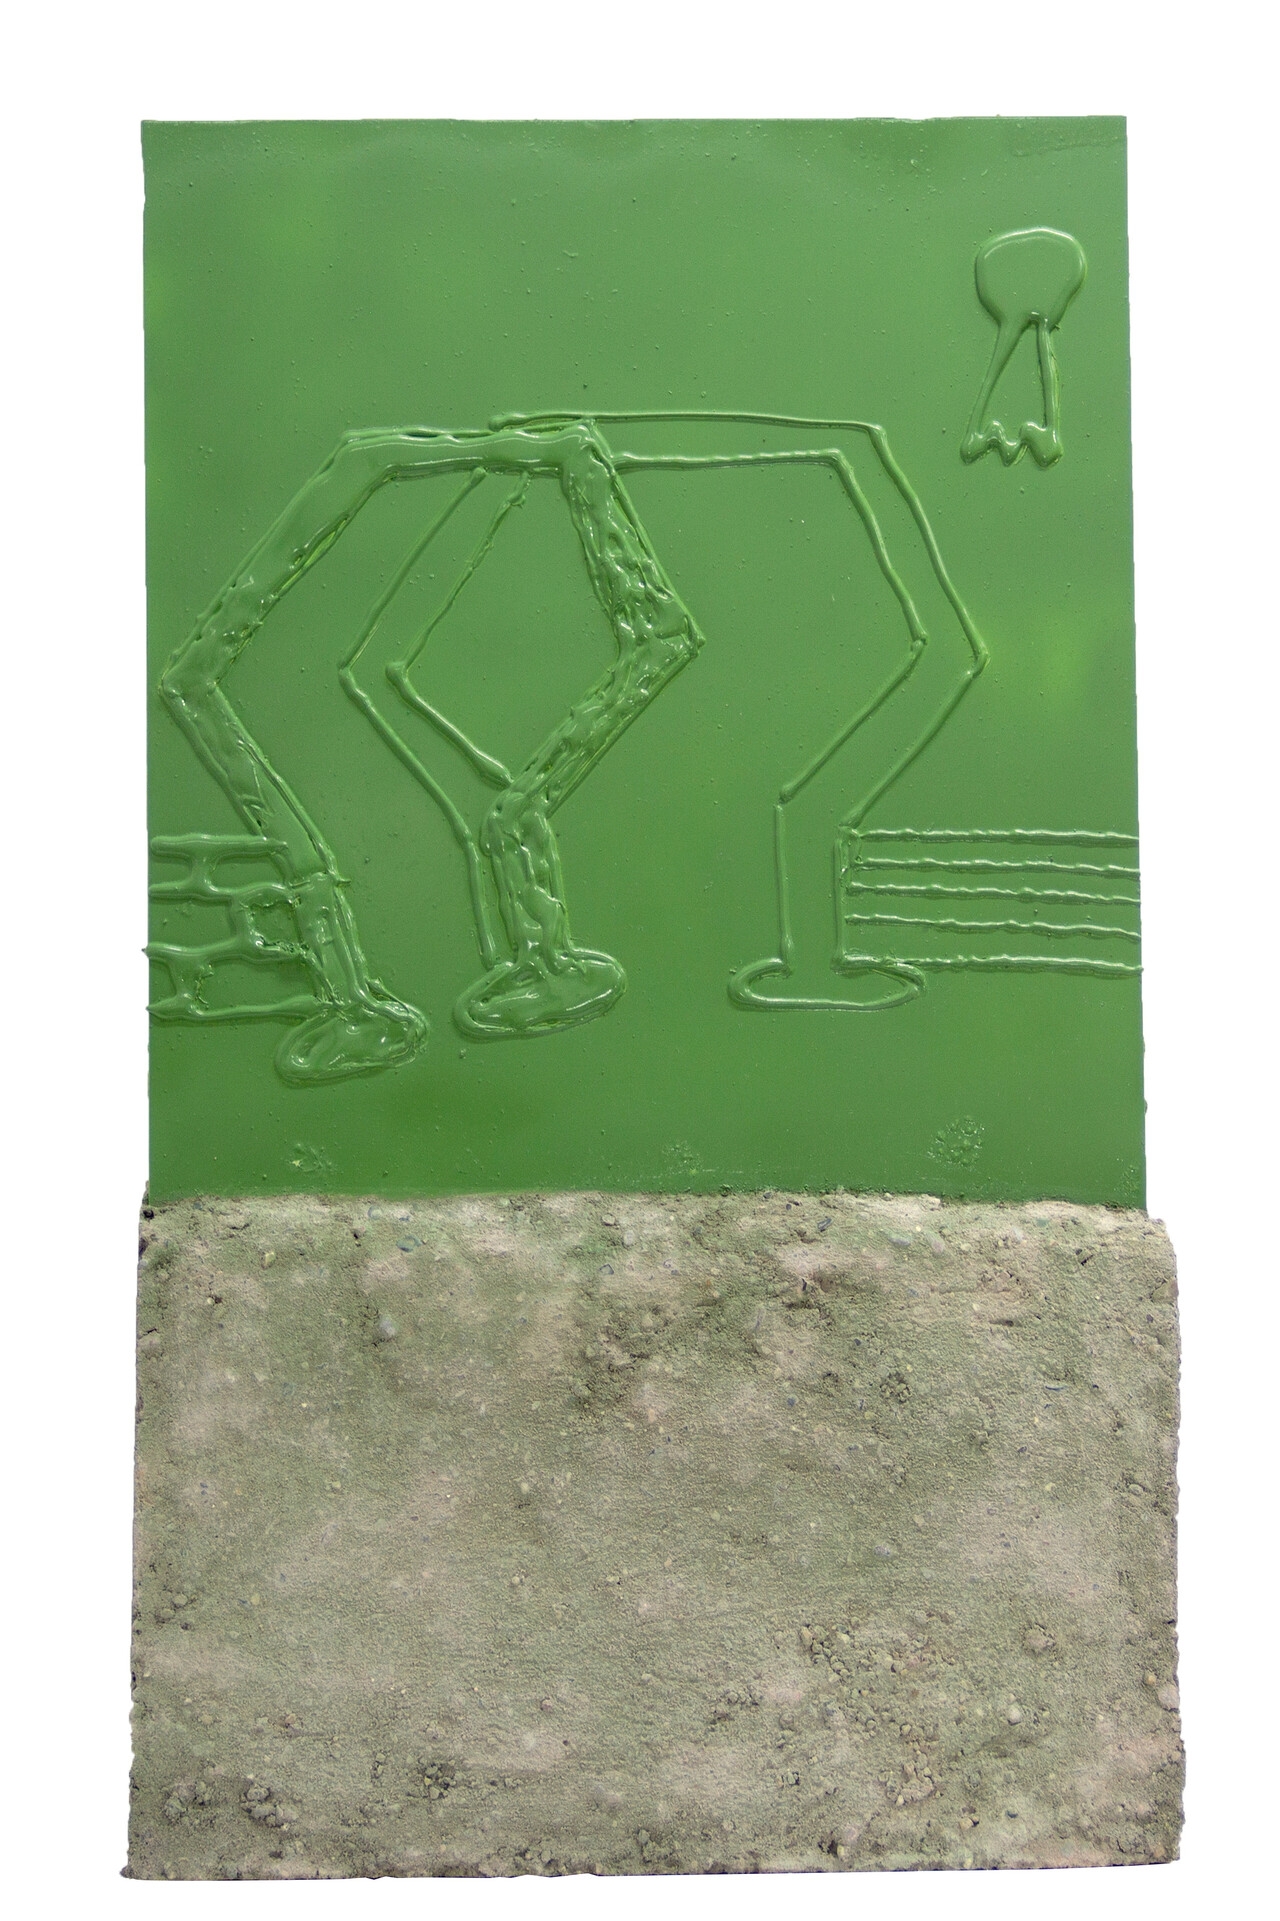 Garten 2, 72×29×4cm, 2019, Acrylic paint, Concrete, Plastic, Plexiglass